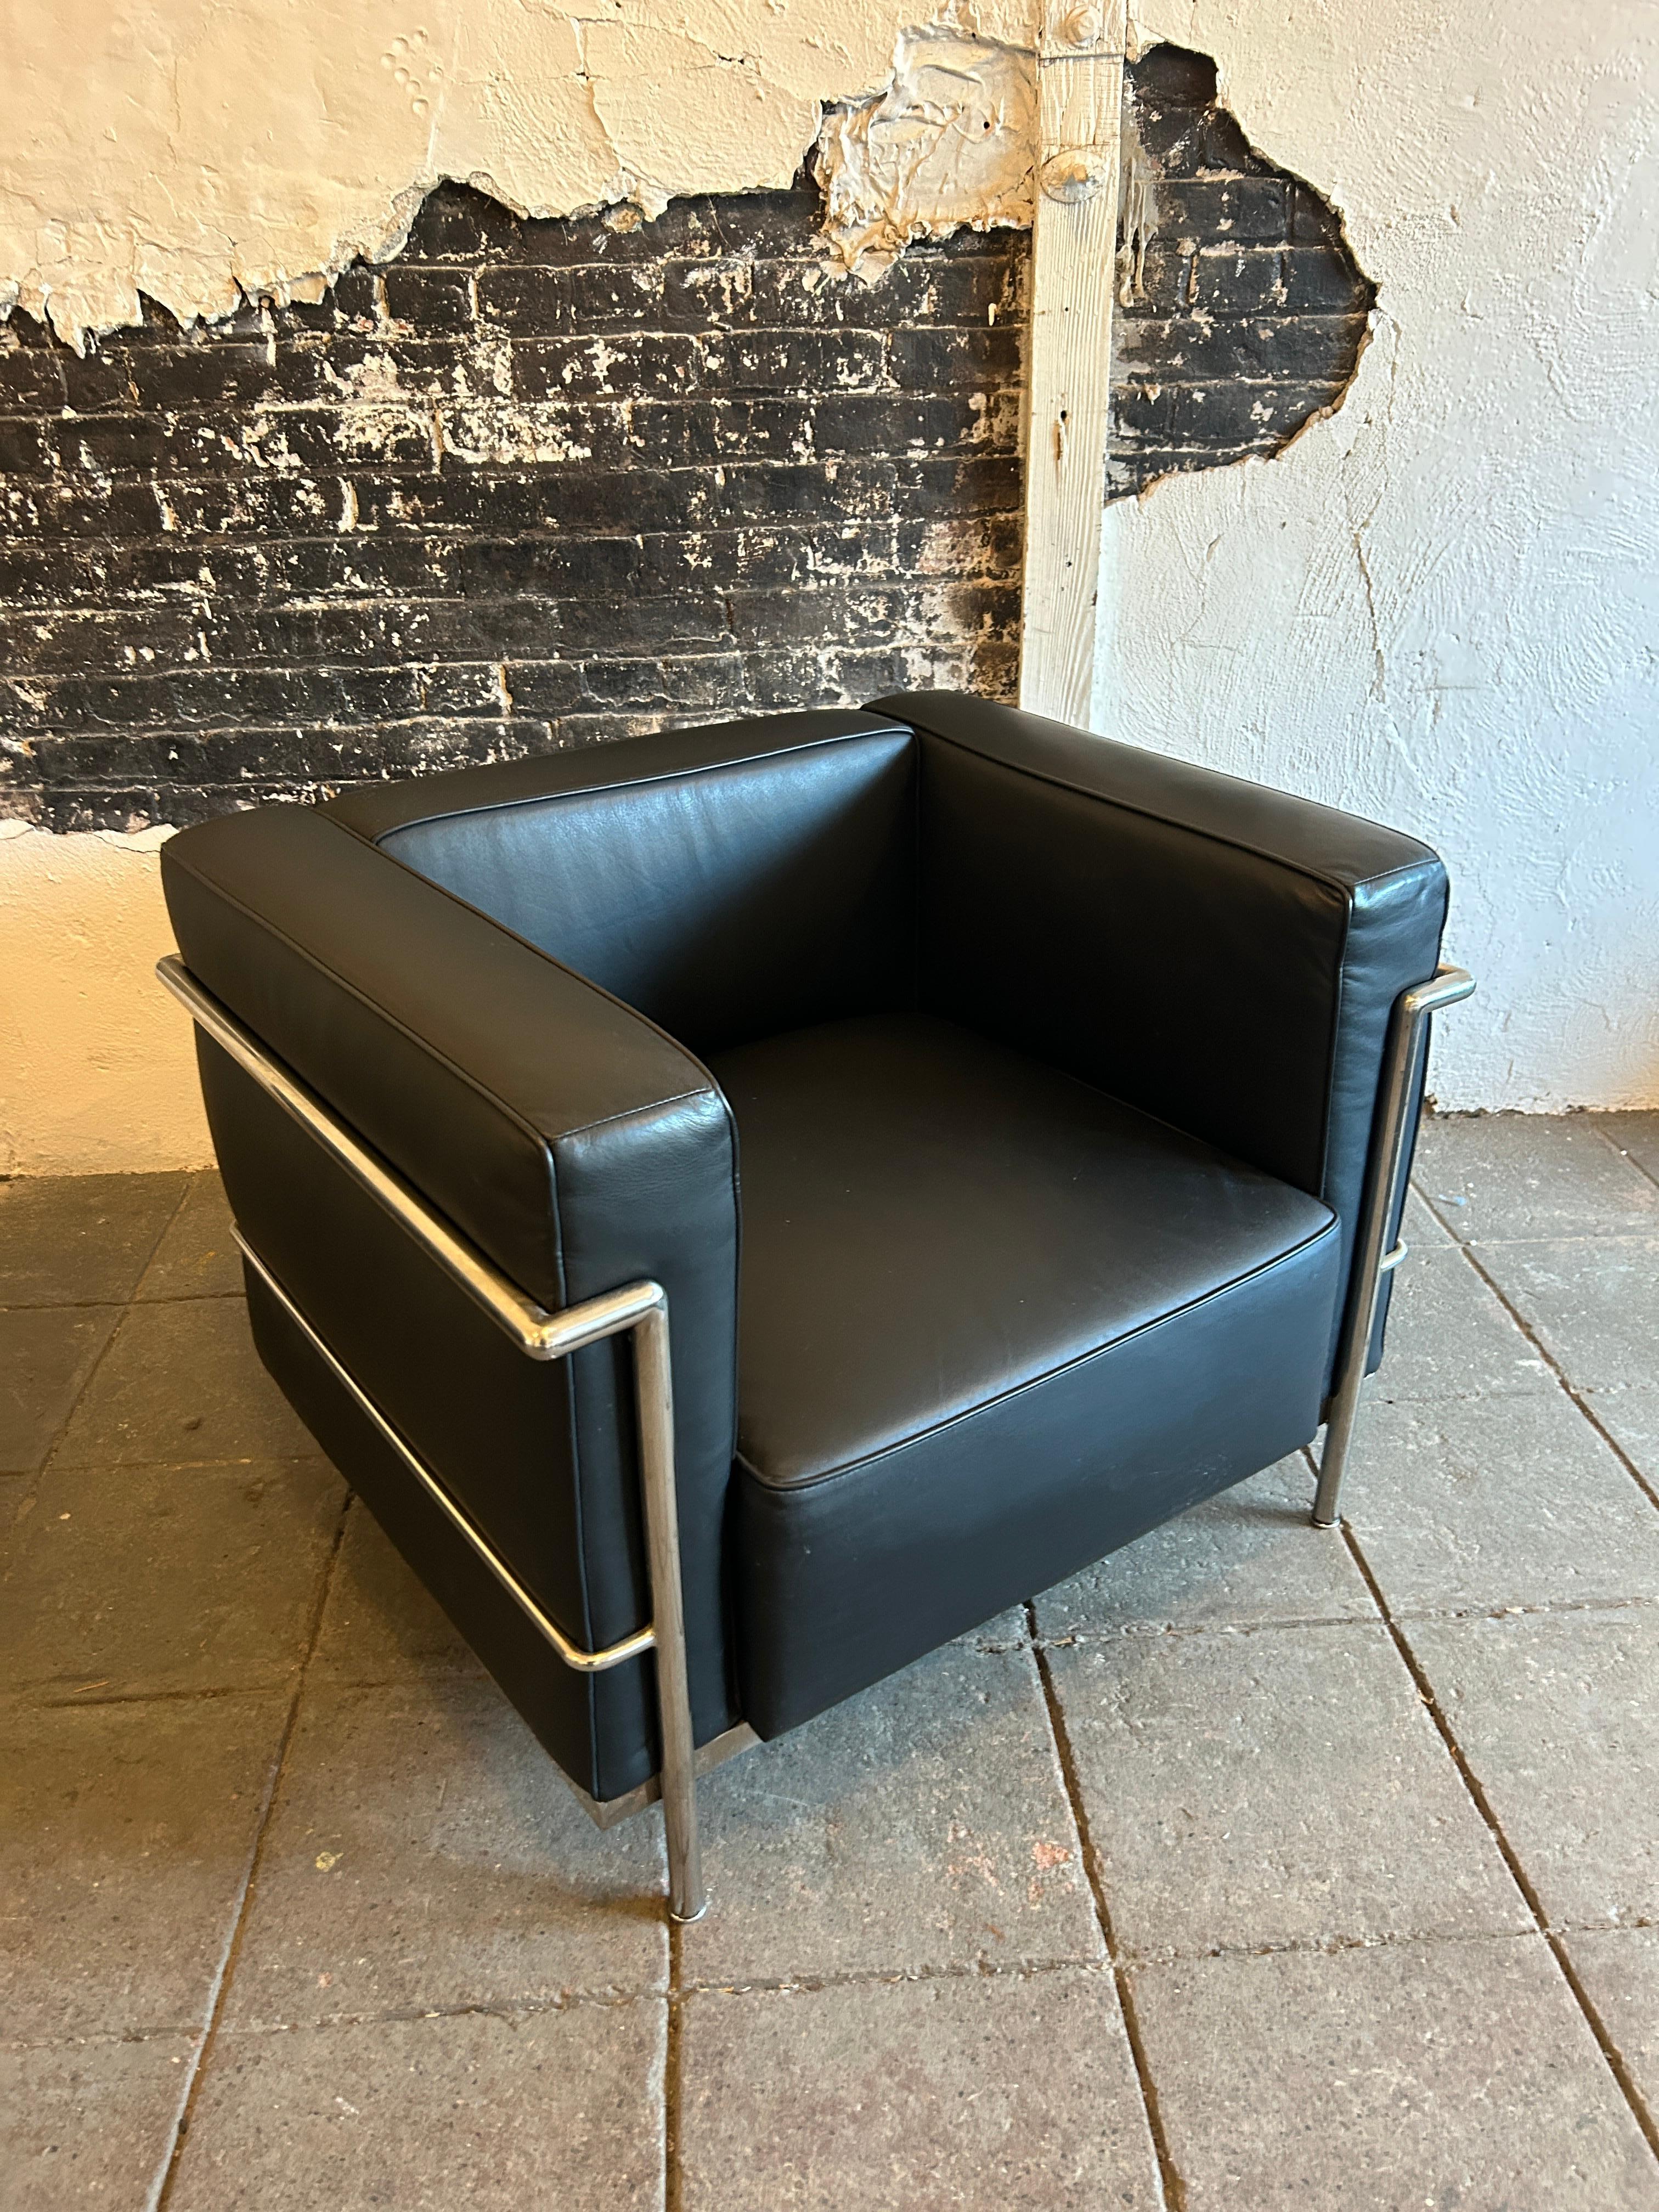 Chaise de salon ou club moderne de Le Corbusier. Modèle large LC3 en cuir souple noir. Triple cadre en acier chromé. Ne présentent que peu ou pas de signes d'utilisation. Fabriqué en Italie. Situé à Brooklyn NYC.

L'offre est pour (1) chaise telle